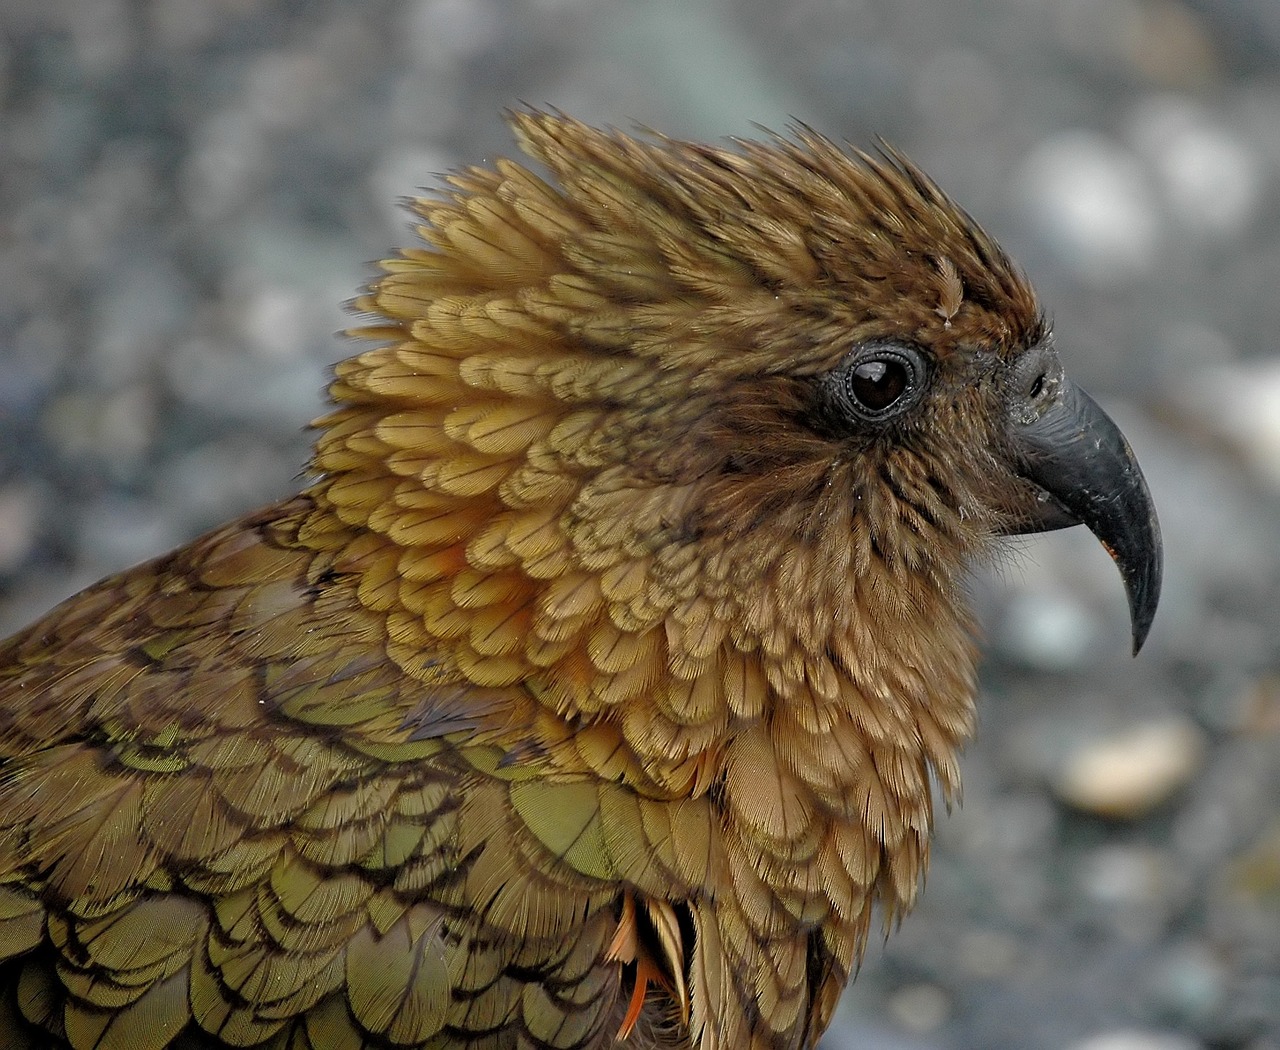 kea new zealand parrot free photo